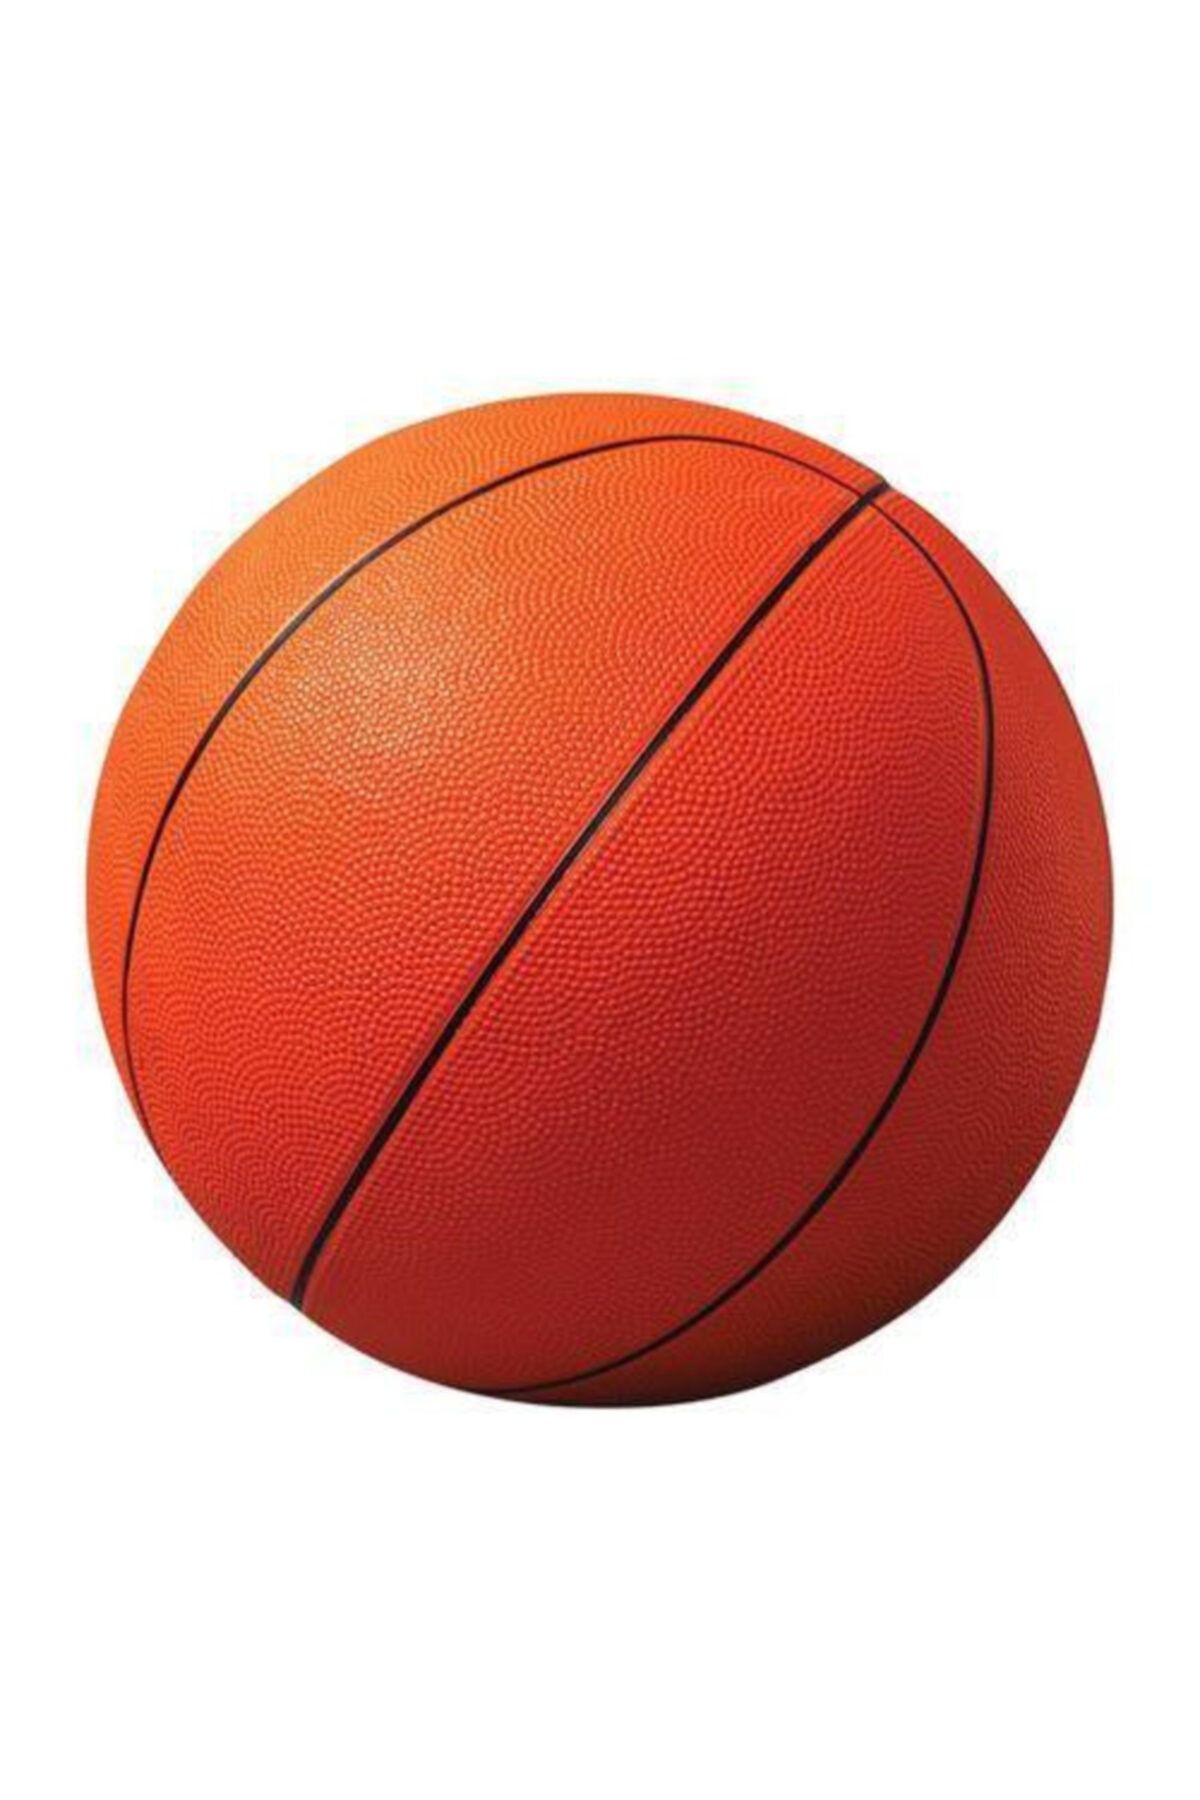 Berrinstore Turuncu Kauçuk Basketbol Topu Profesyonel Boy